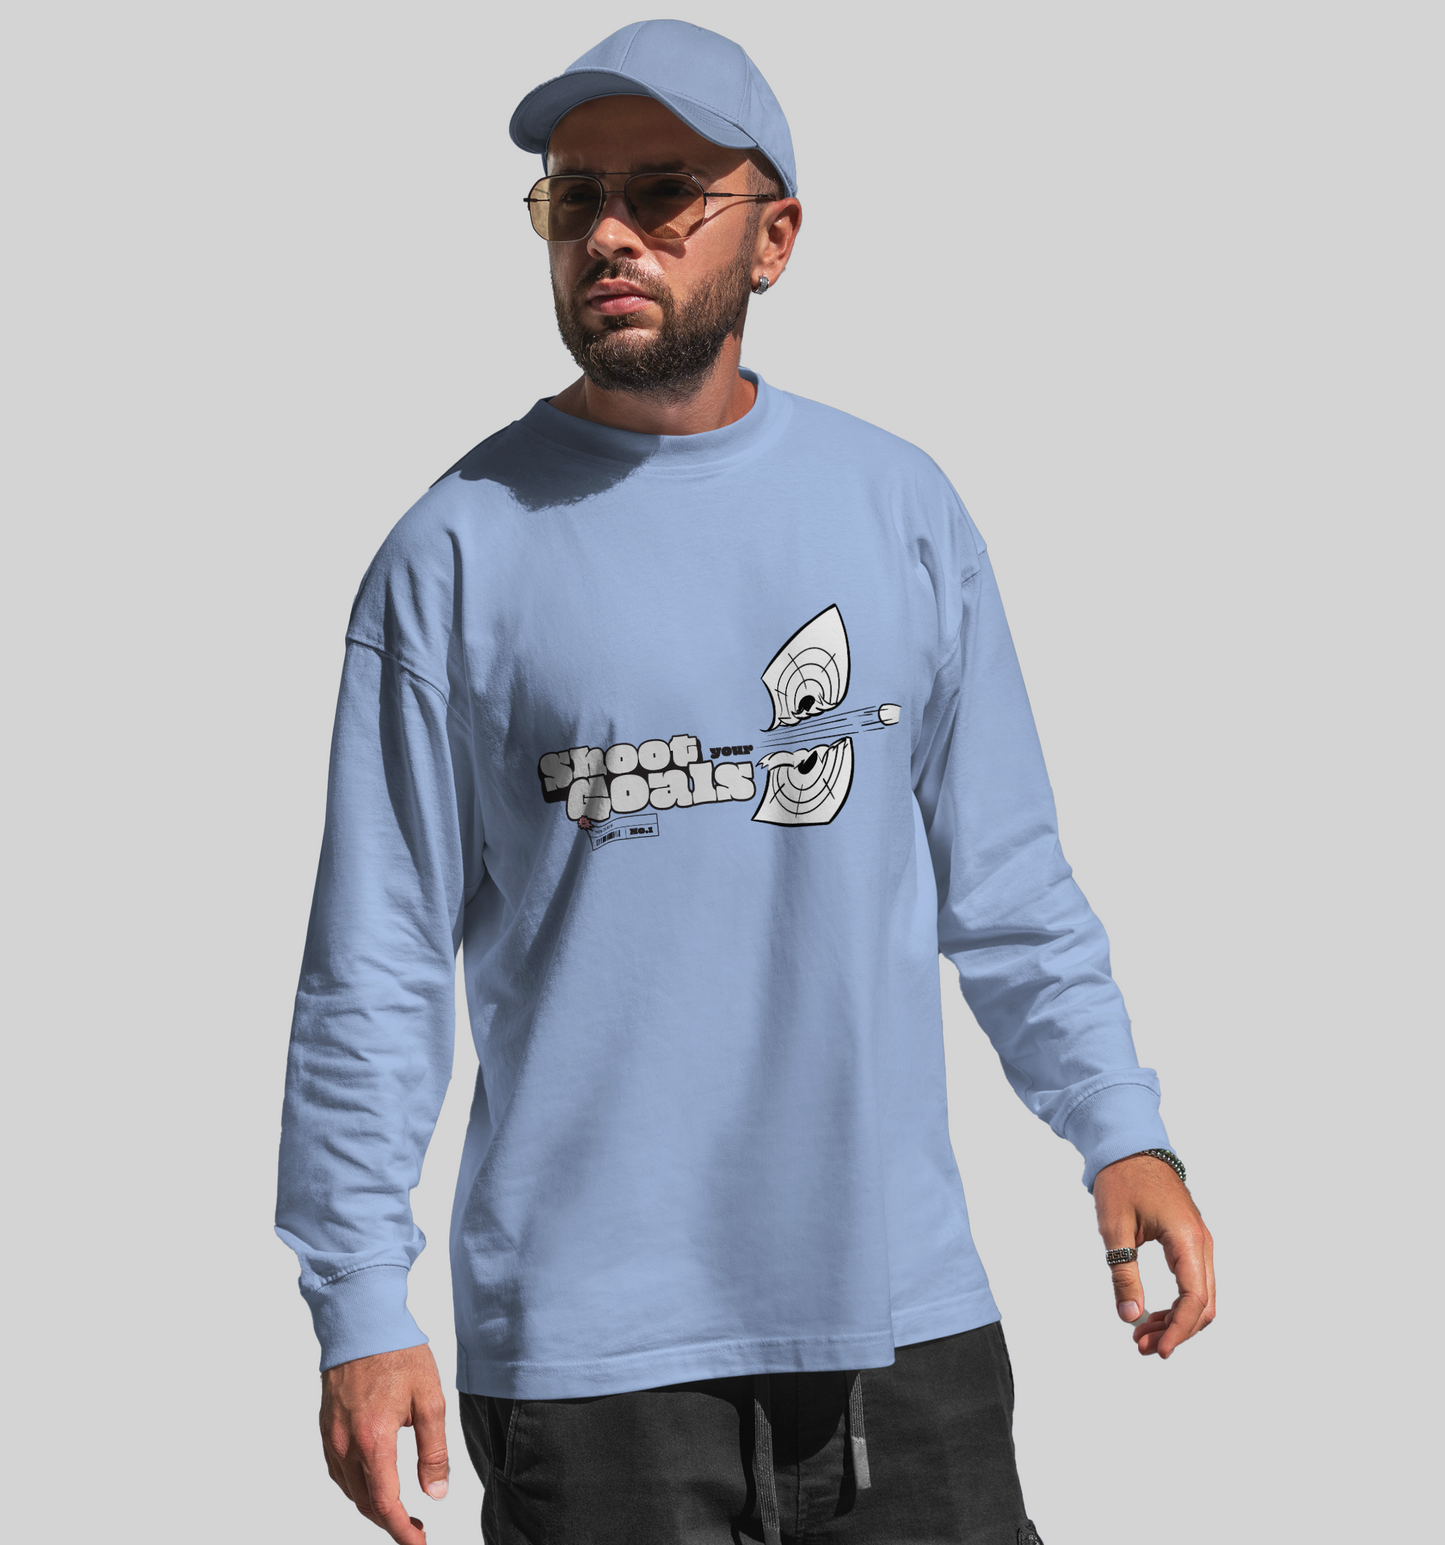 Shoot Your Goals sweatshirt In Streetwear - Mon Zurich Originals